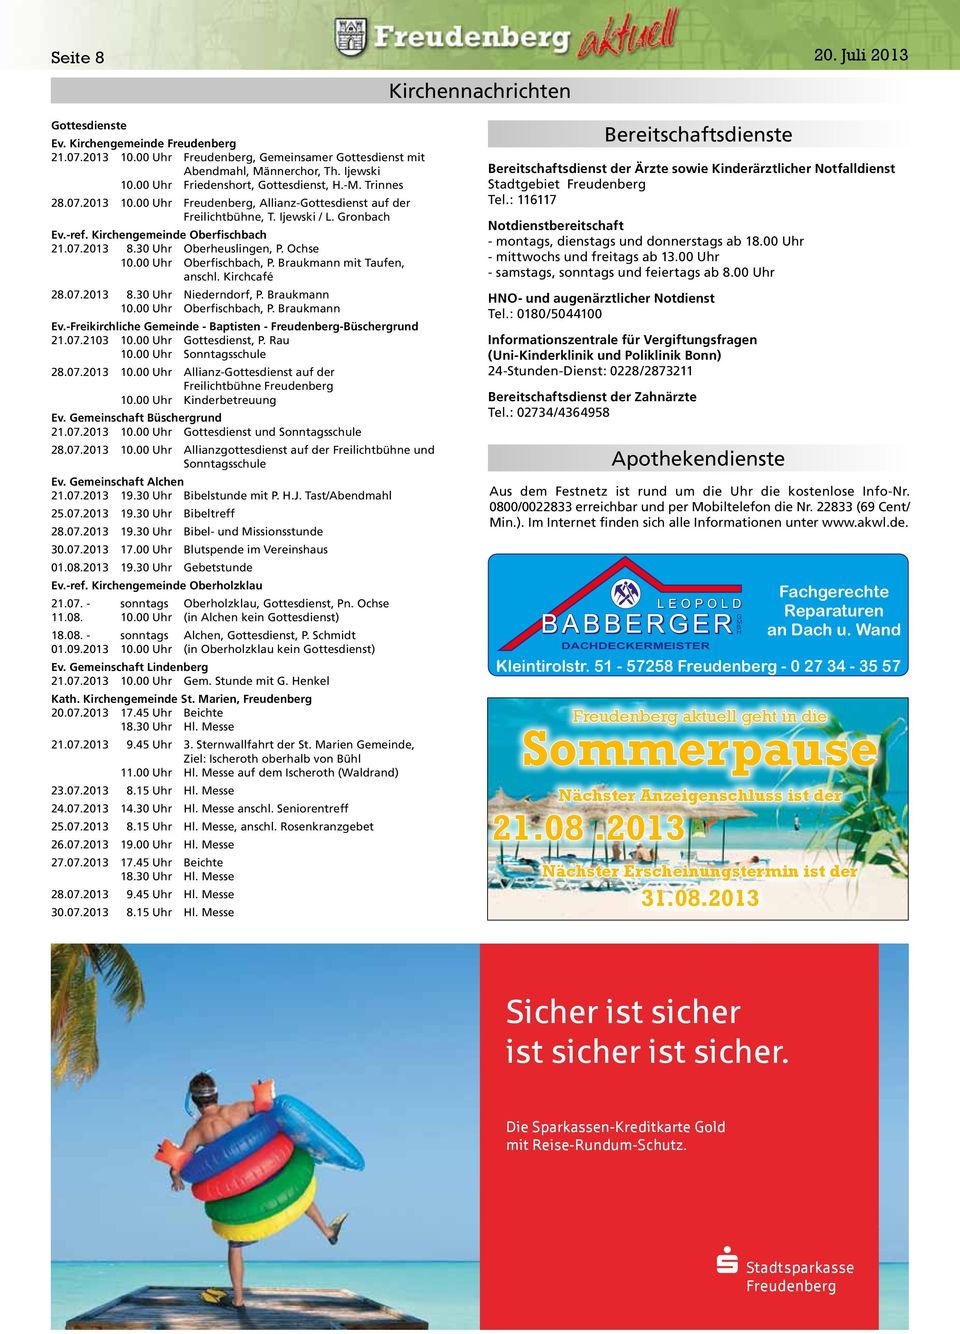 30 Uhr Oberheuslingen, P. Ochse 10.00 Uhr Oberfischbach, P. Braukmann mit Taufen, anschl. Kirchcafé 28.07.2013 8.30 Uhr Niederndorf, P. Braukmann 10.00 Uhr Oberfischbach, P. Braukmann Ev.